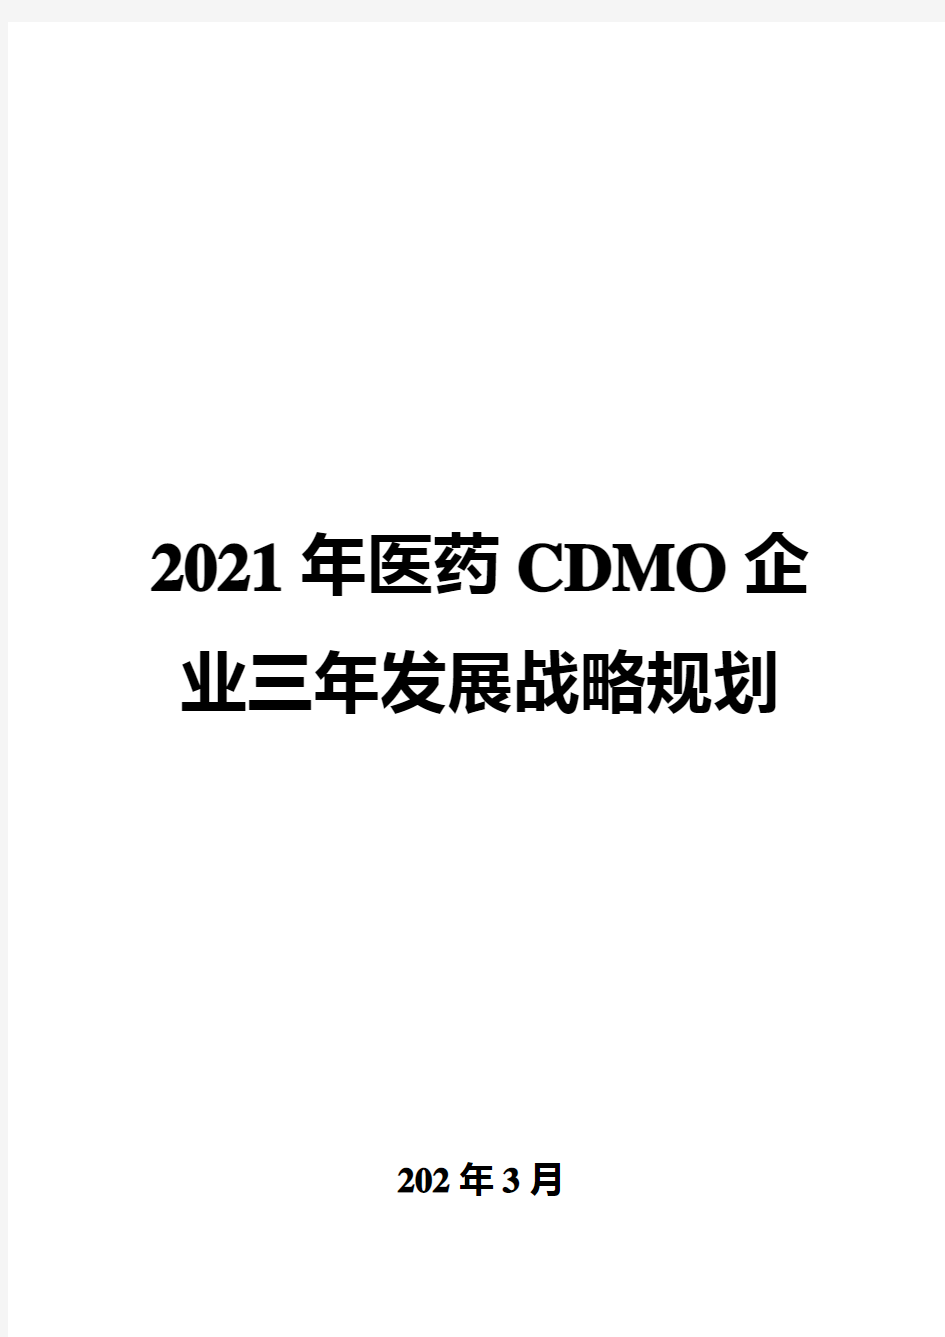 2021年医药CDMO企业三年发展战略规划